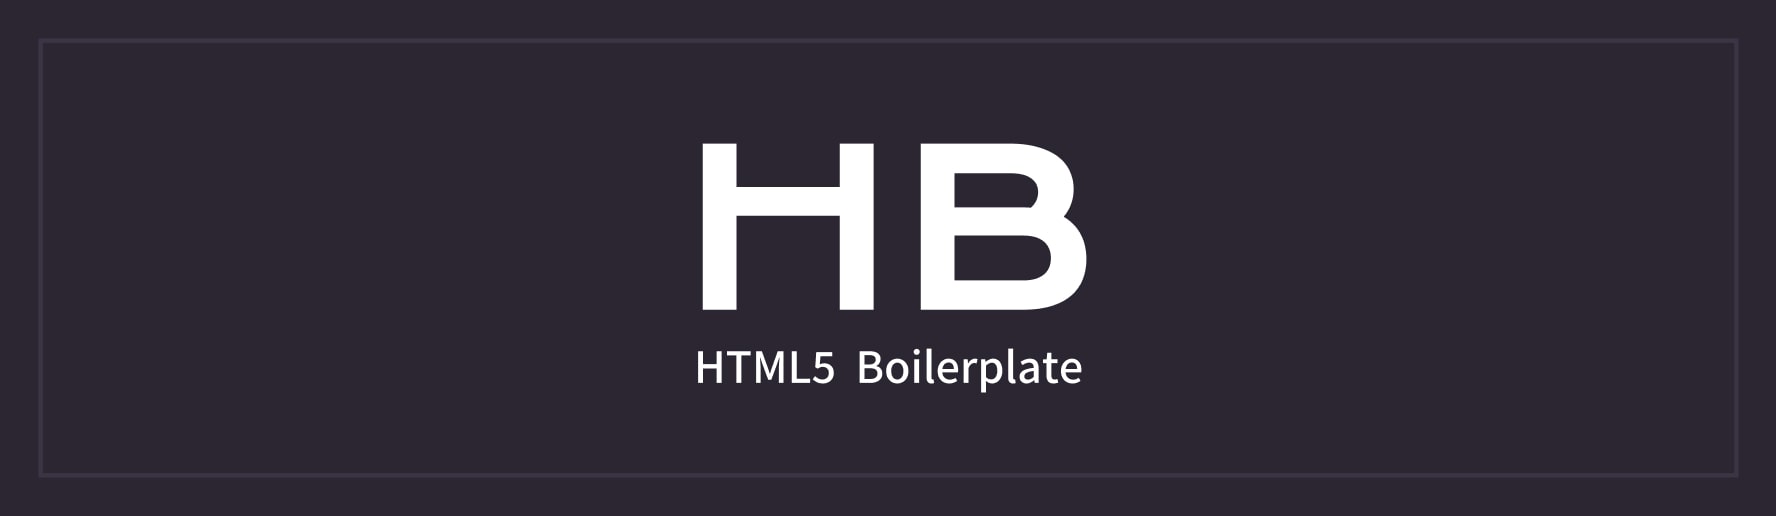 HTML5 Boilerplate banner